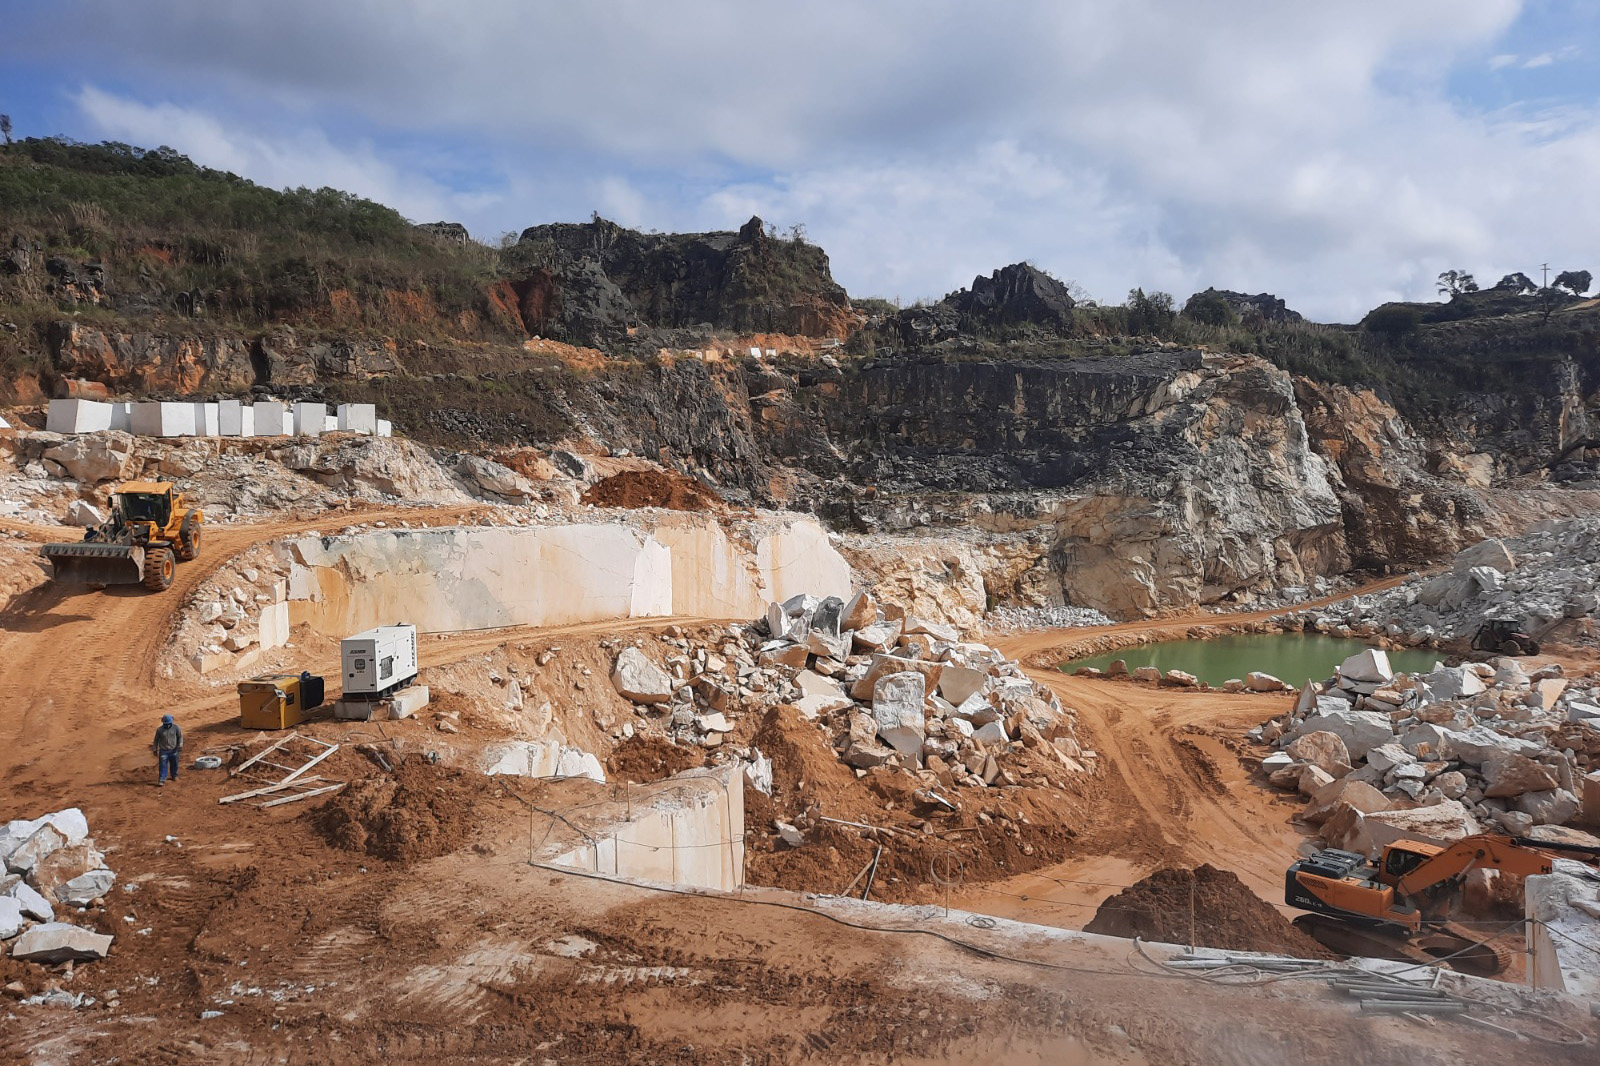 Mineração Fiorese, em Rio Branco do Sul, na Região Metropolitana de Curitiba